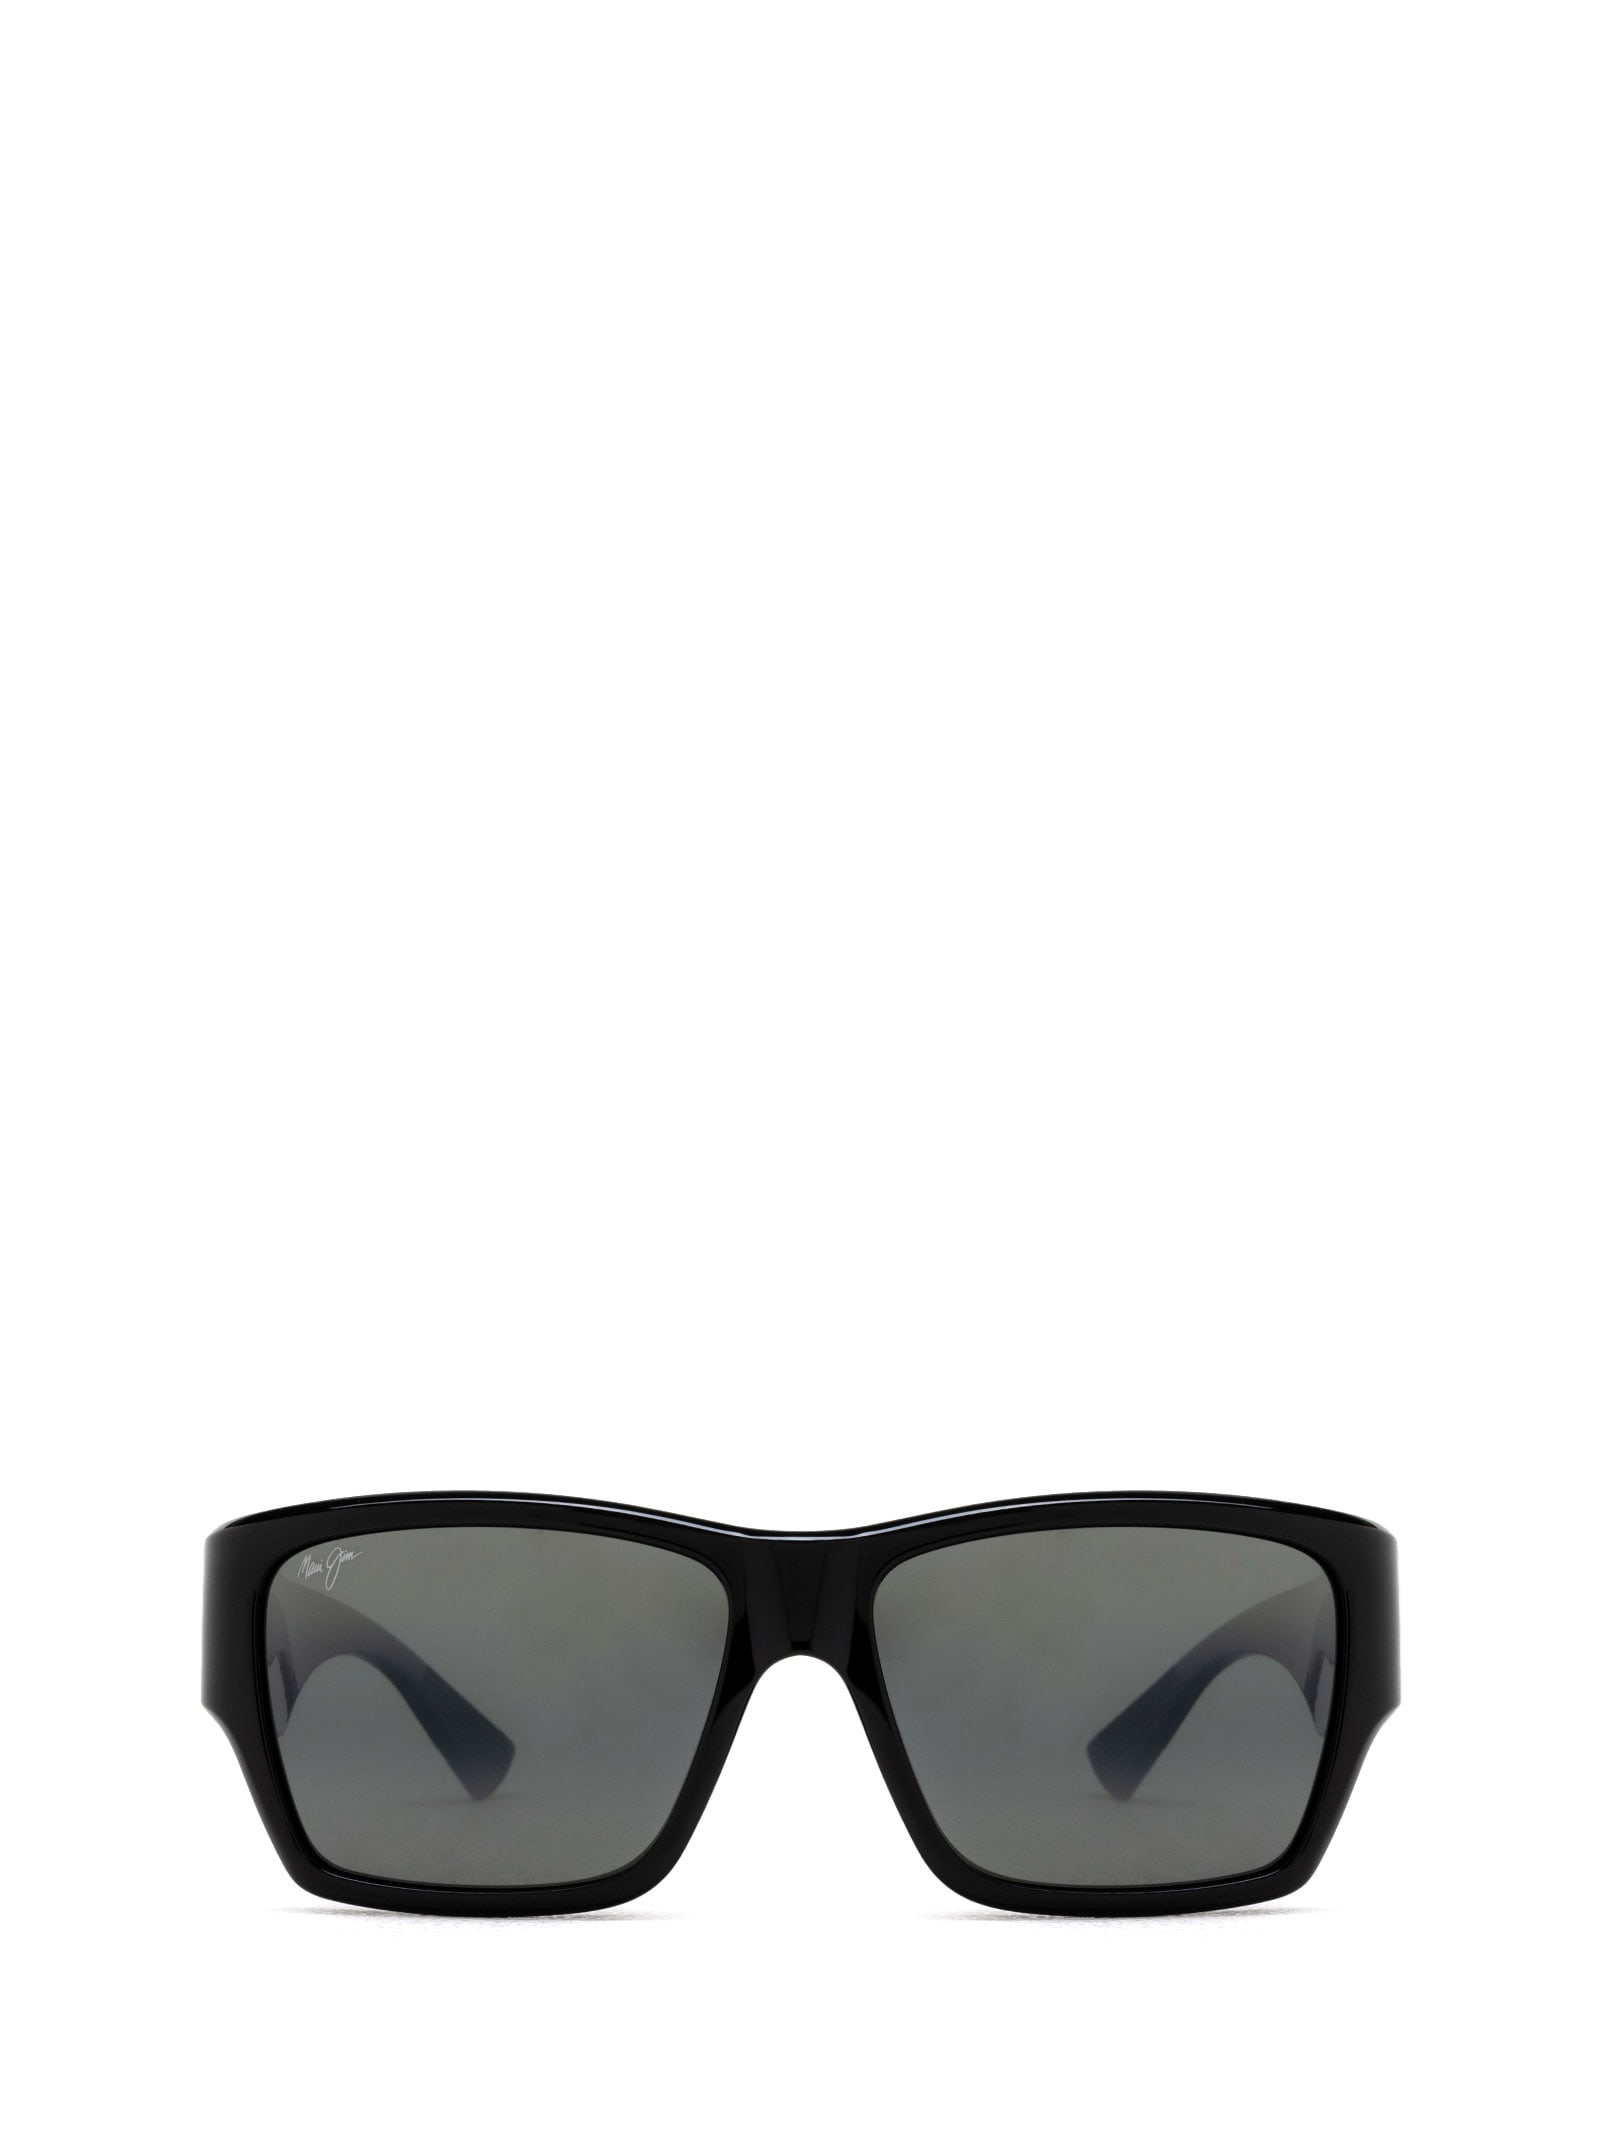 Shop Maui Jim Mj614 Shiny Black Sunglasses